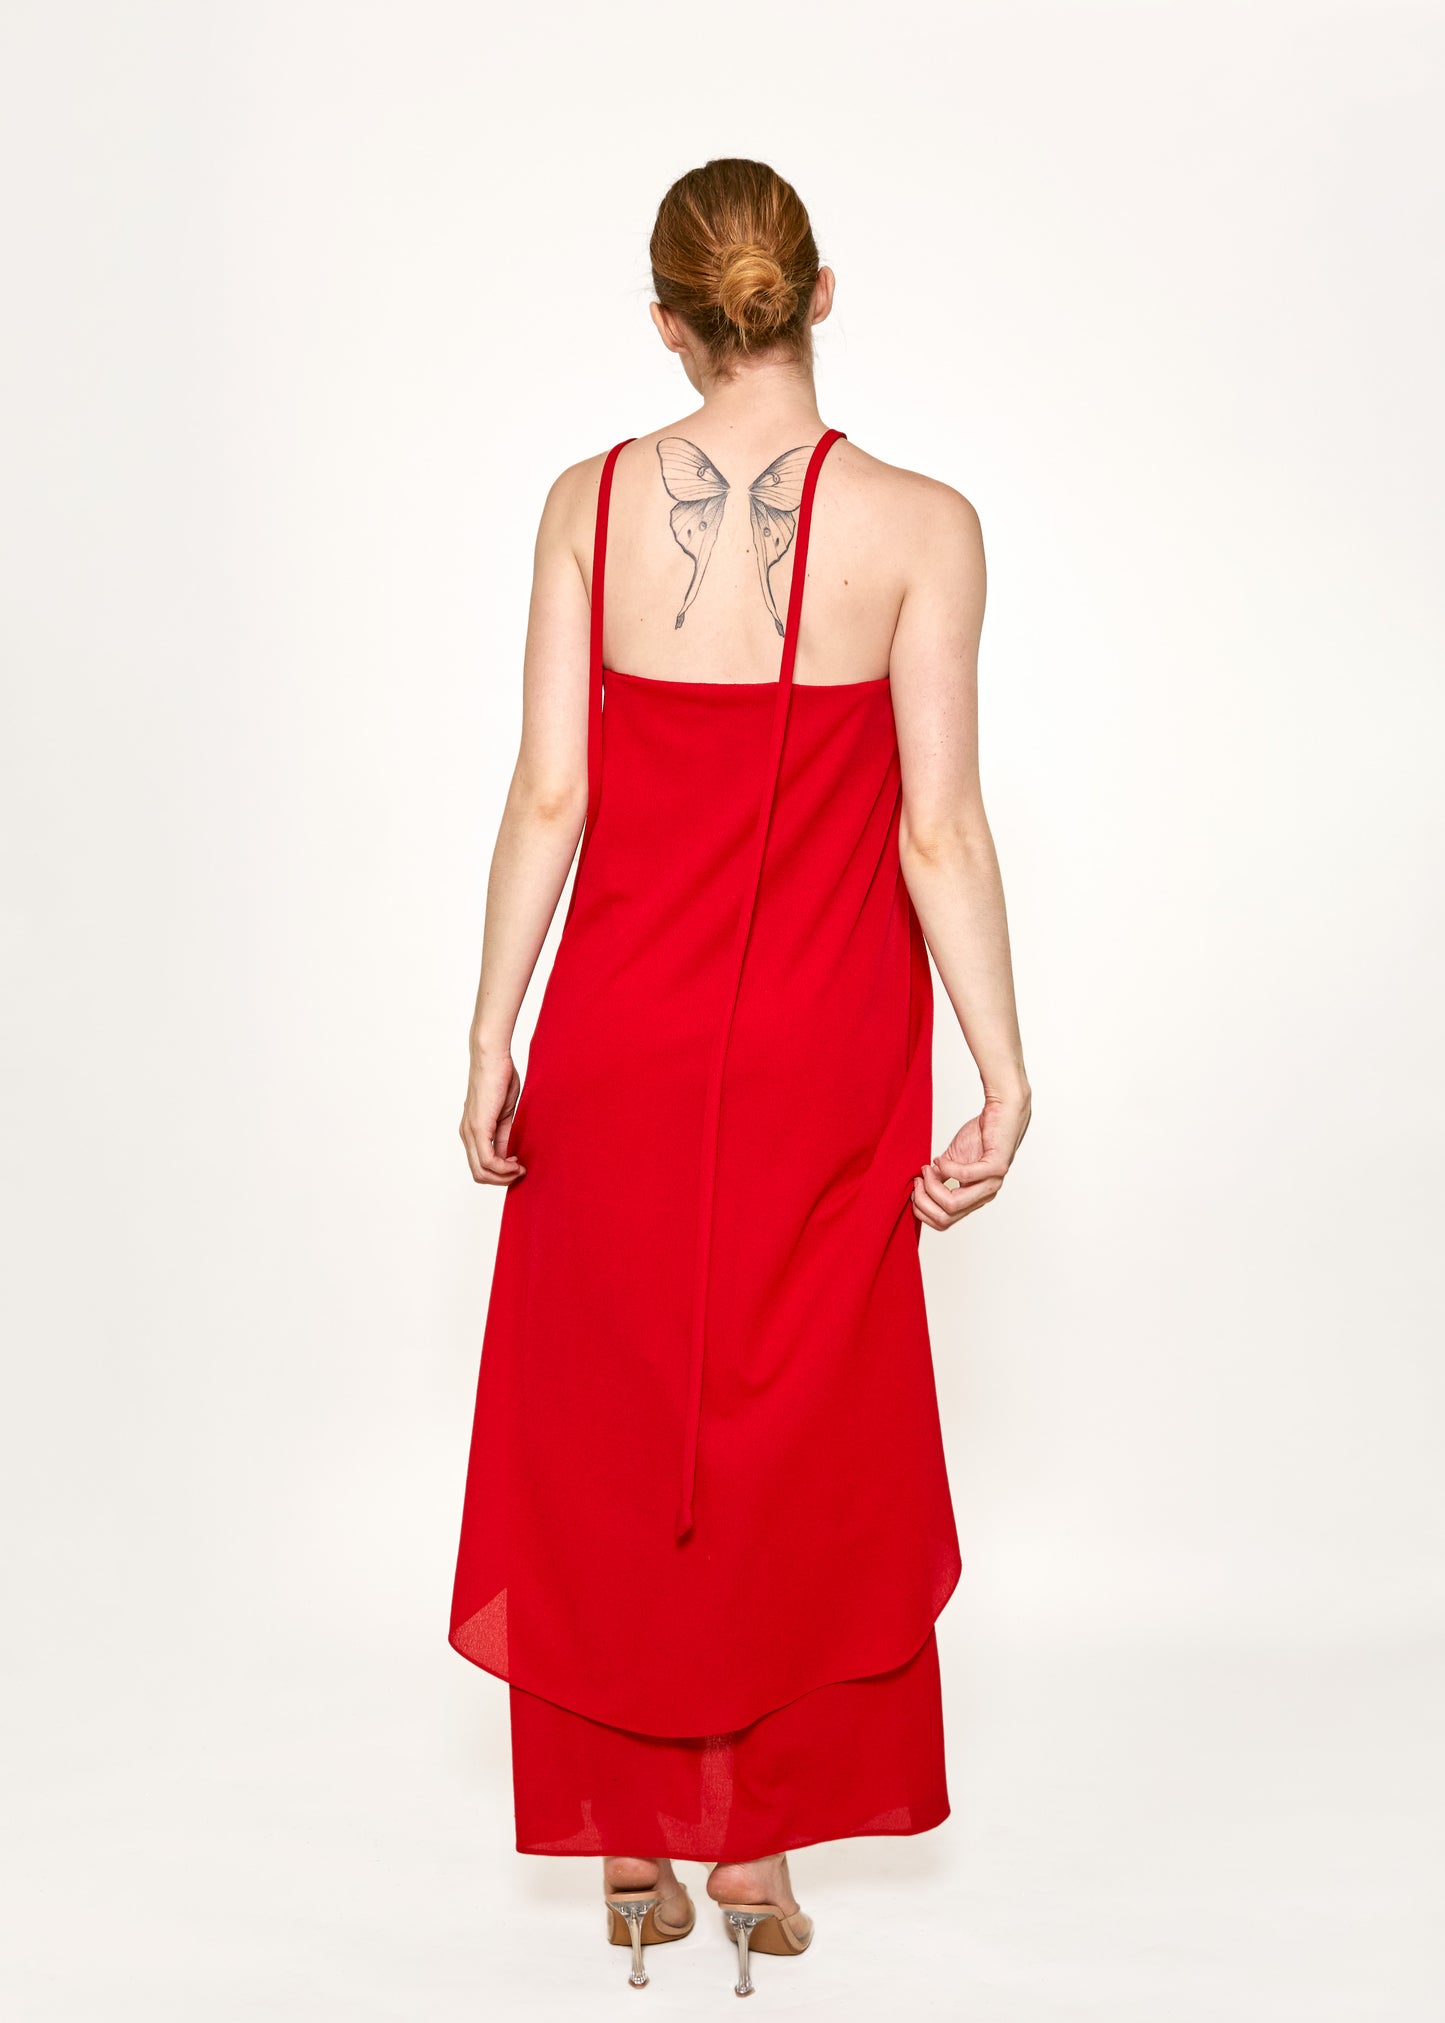 Bill Blass Red Hooded Dress